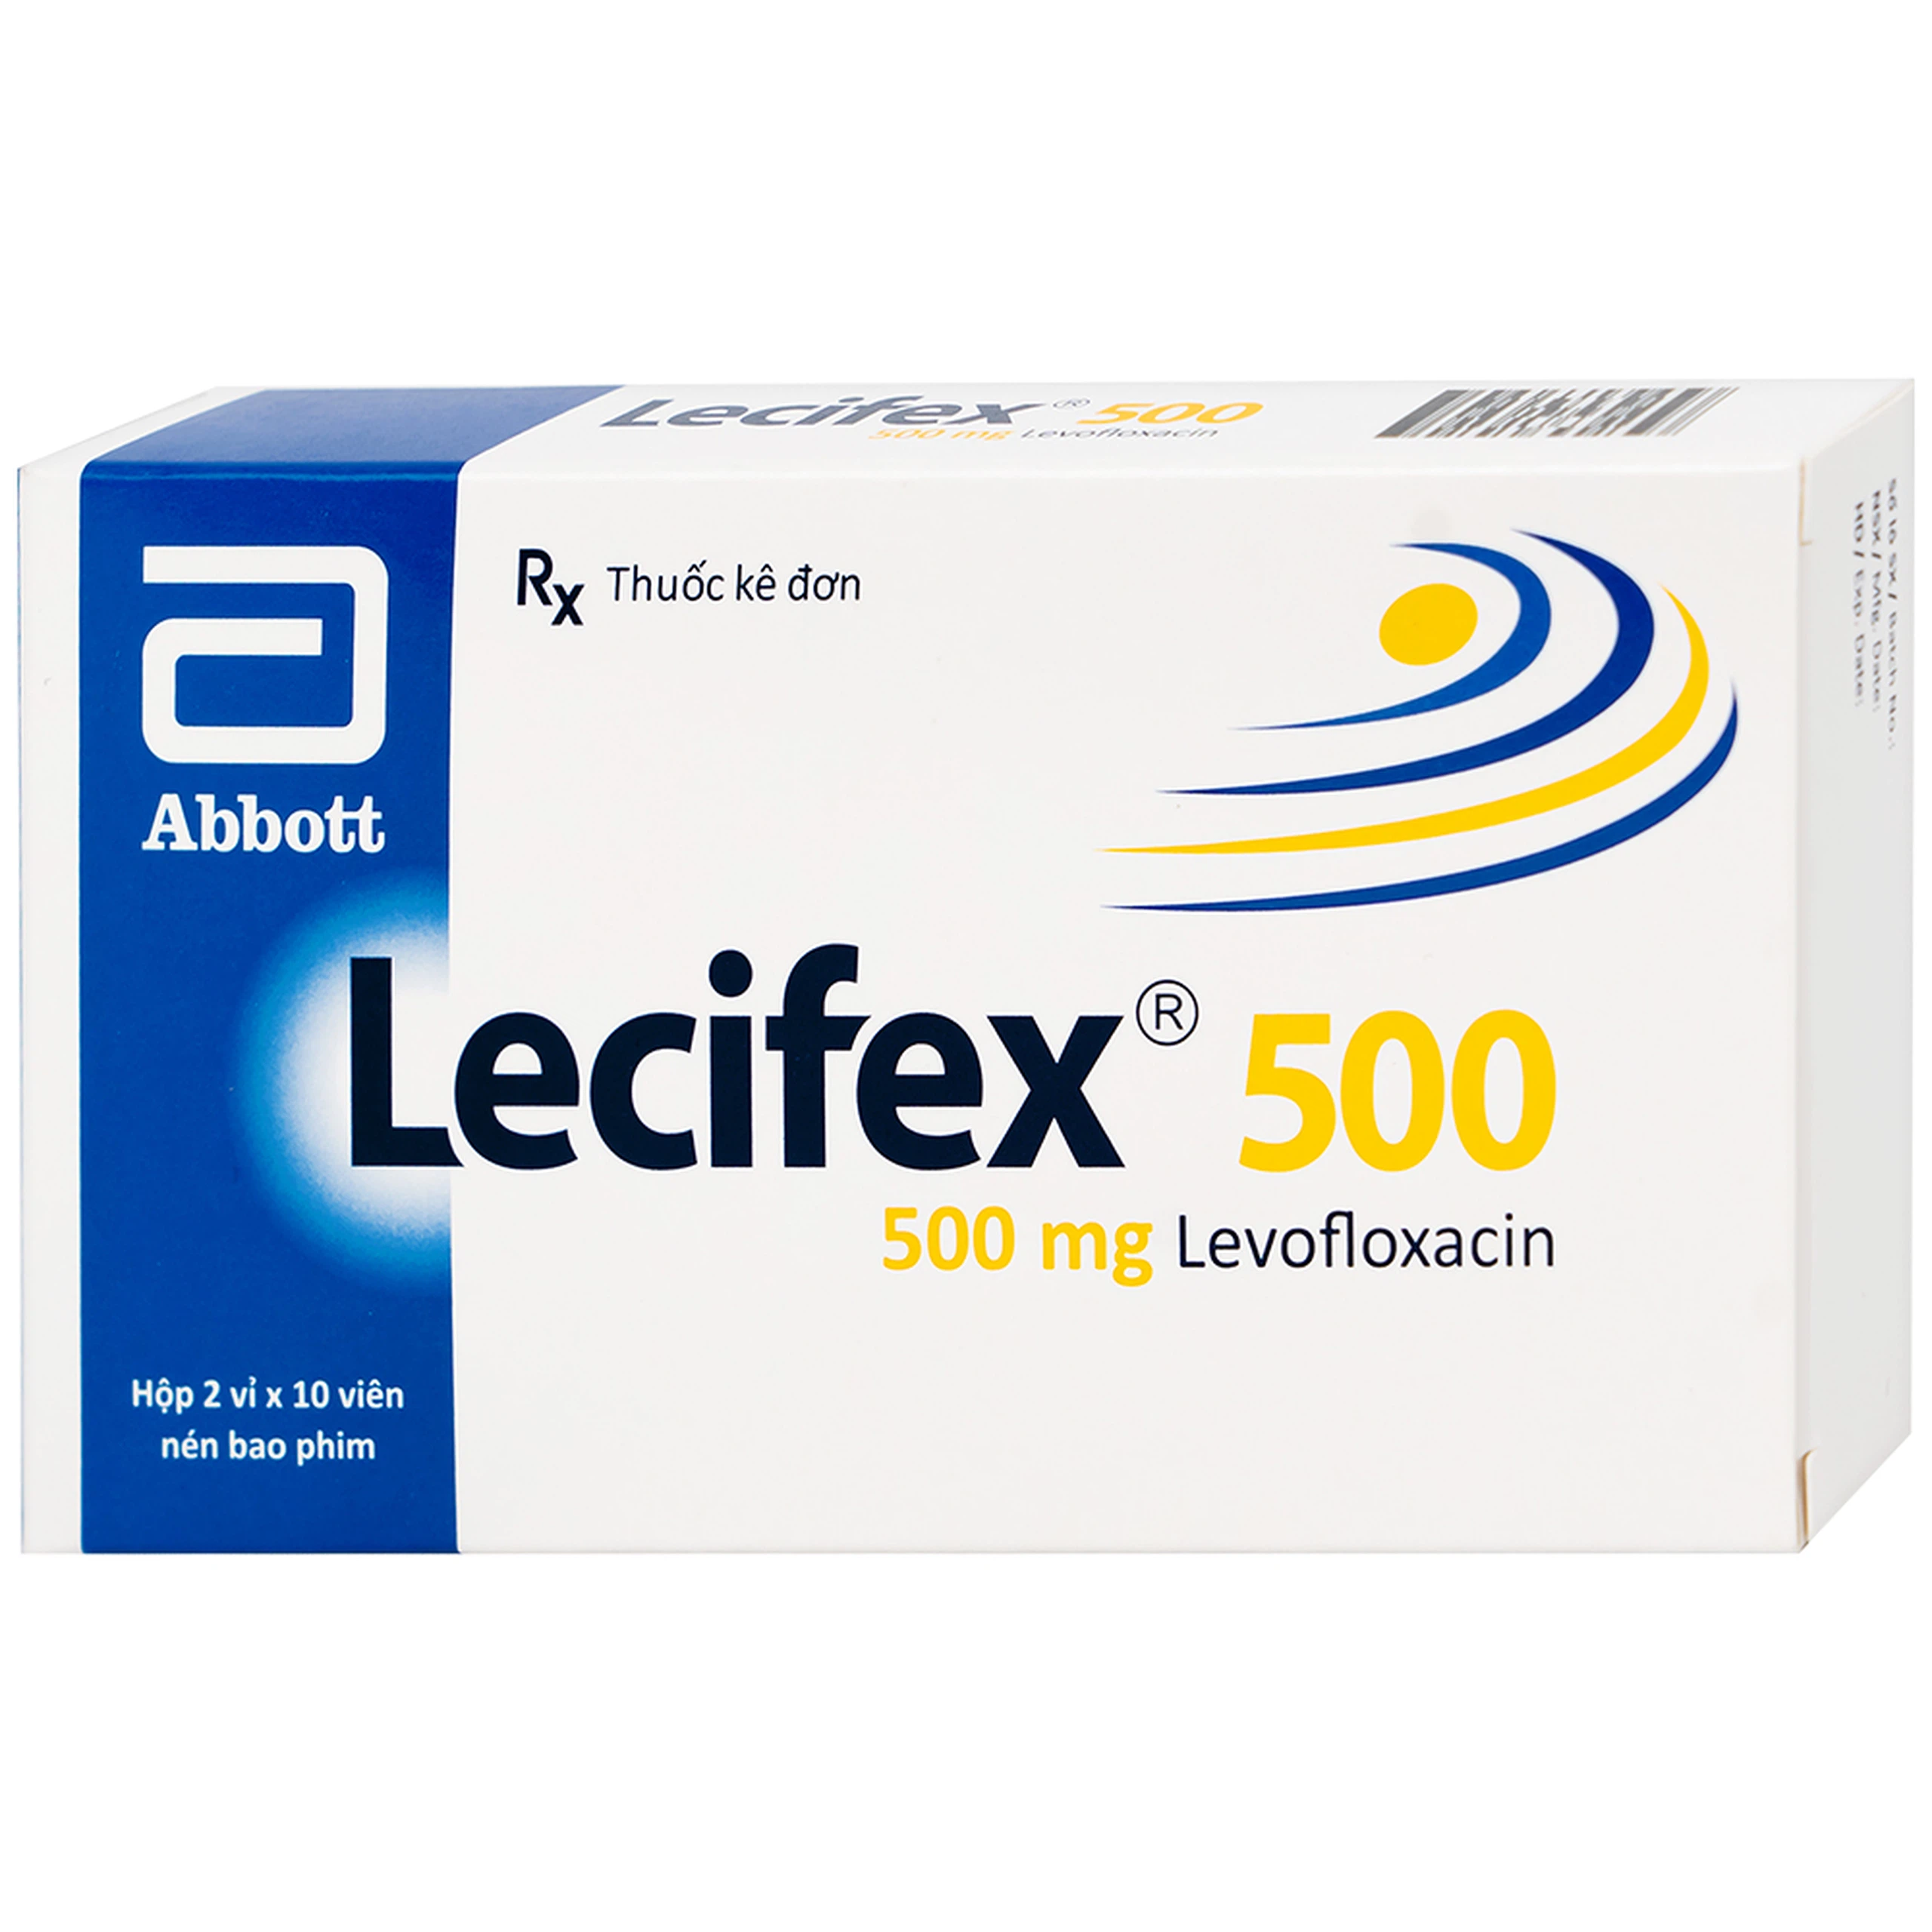 Thuốc Lecifex 500mg Abbott điều trị nhiễm khuẩn nhẹ, vừa và nặng (2 vỉ x 10 viên)